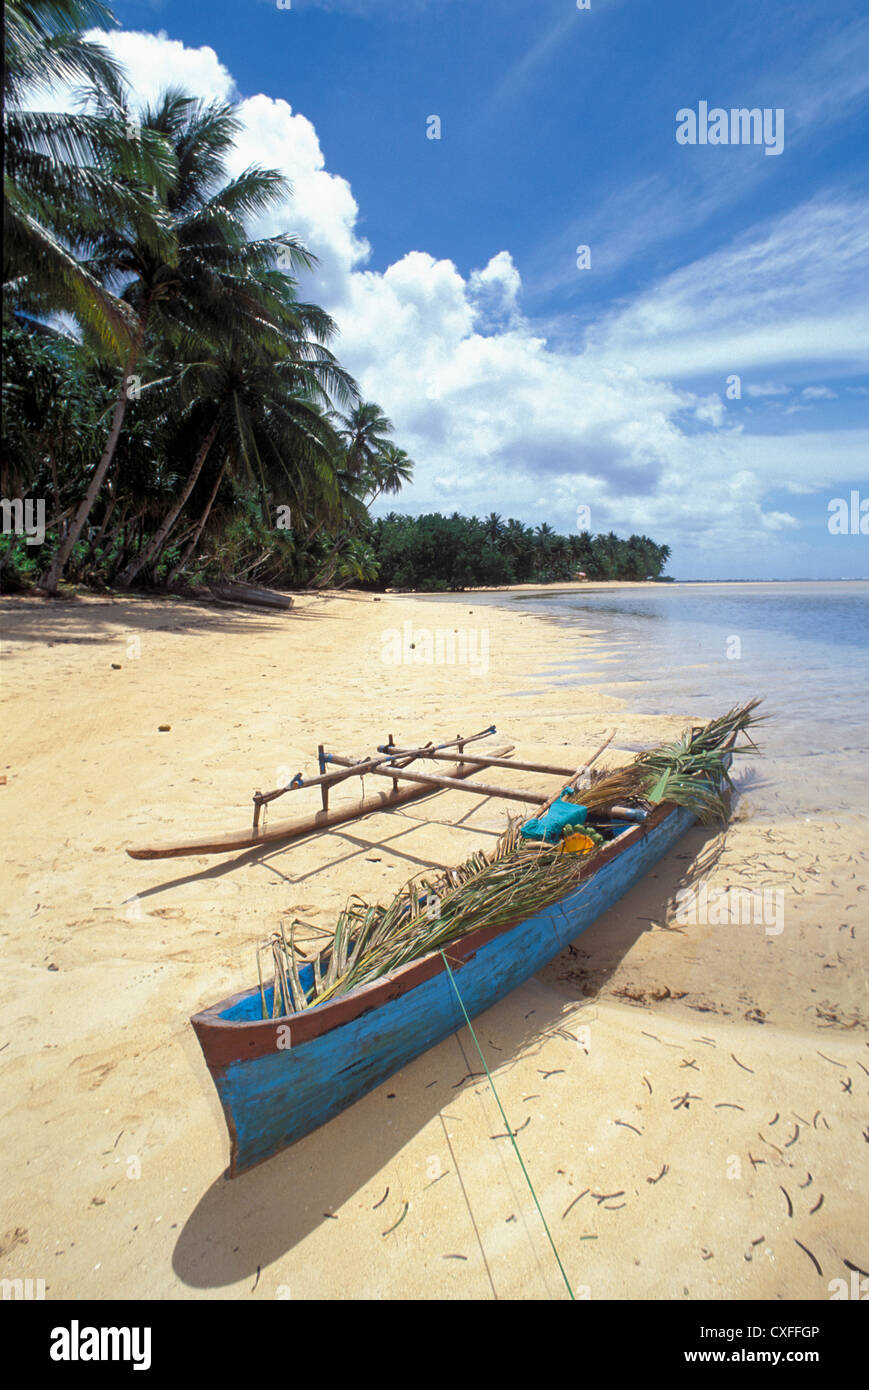 Outrigger canoa en palm playa arbolada, la aldea de Walung, Kosrae, Micronesia. Foto de stock